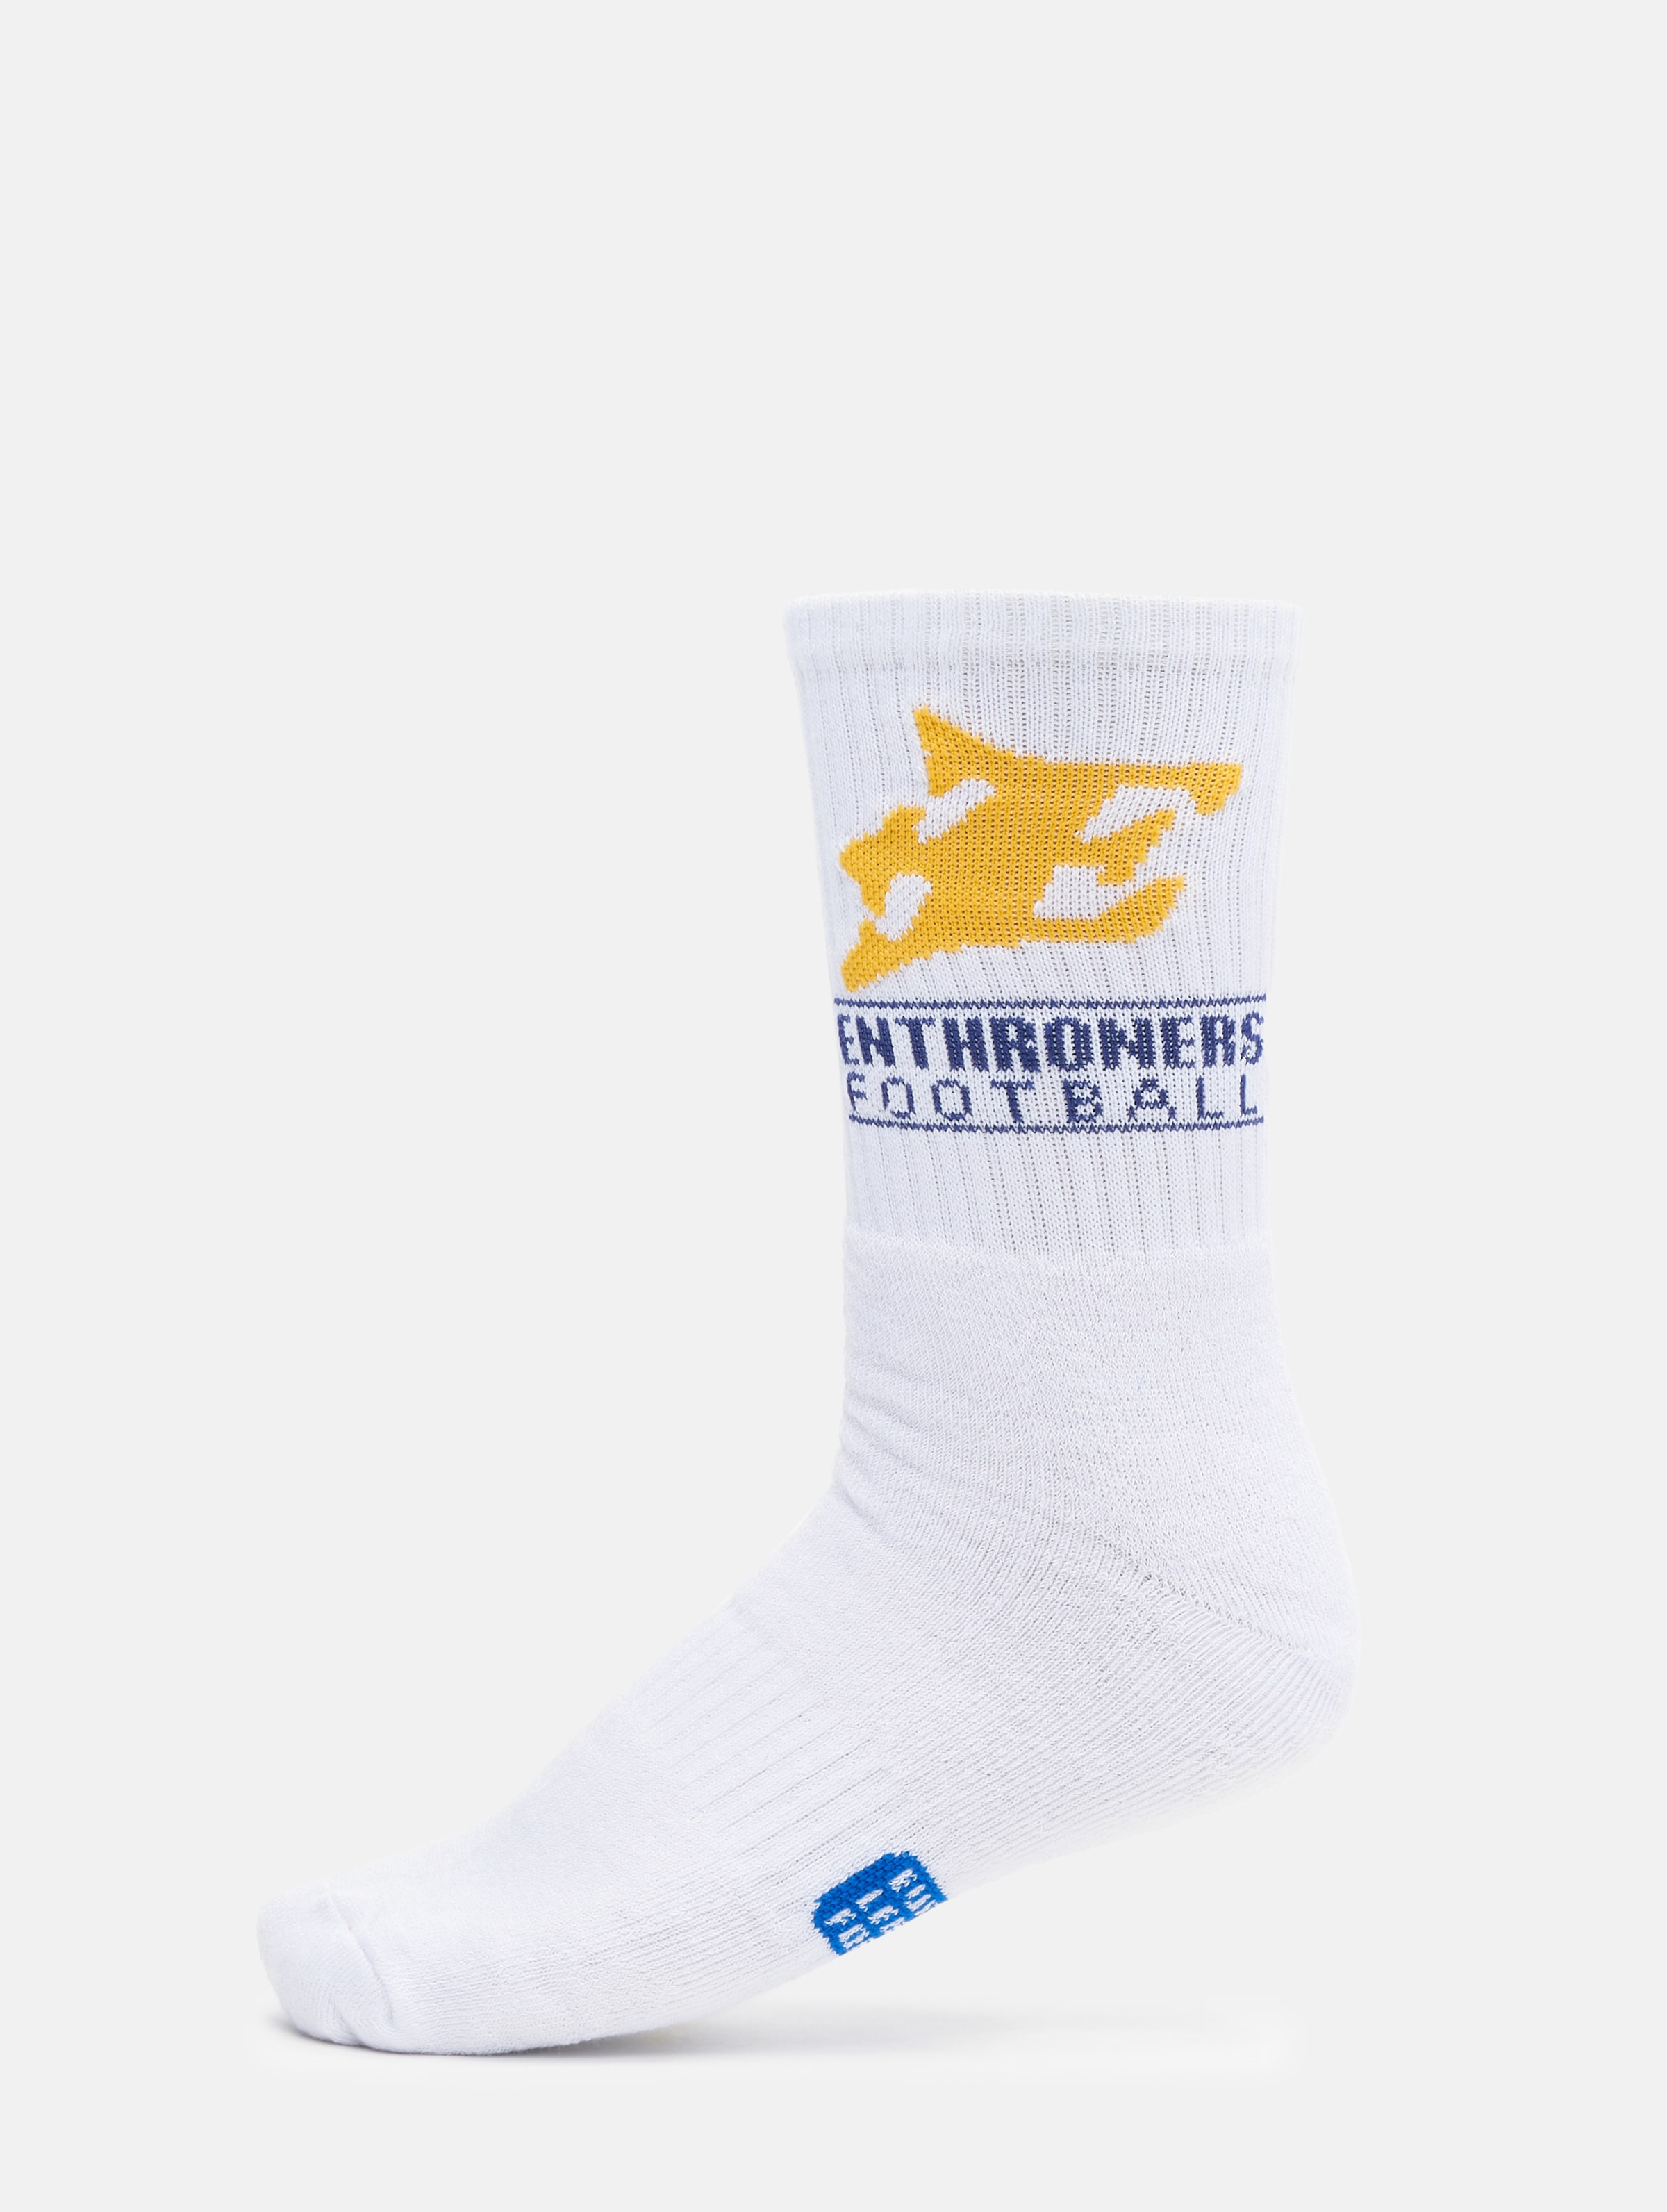 European League Of Football Fehervar Enthroners Socks Vrouwen op kleur wit, Maat 4244